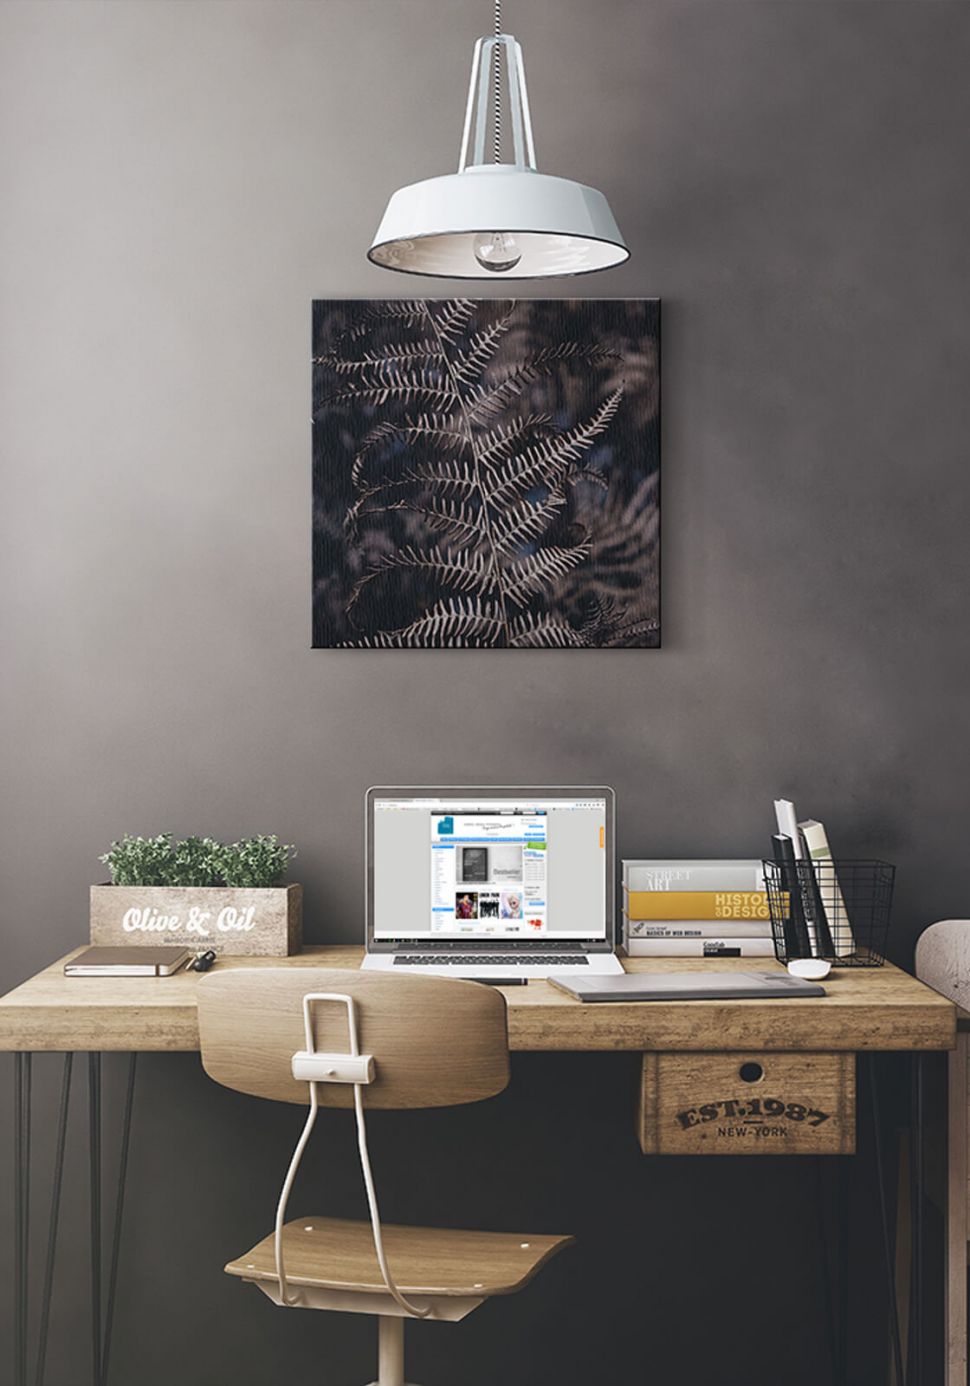 Obraz na płótnie z liściem paproci powieszony nad biurkiem